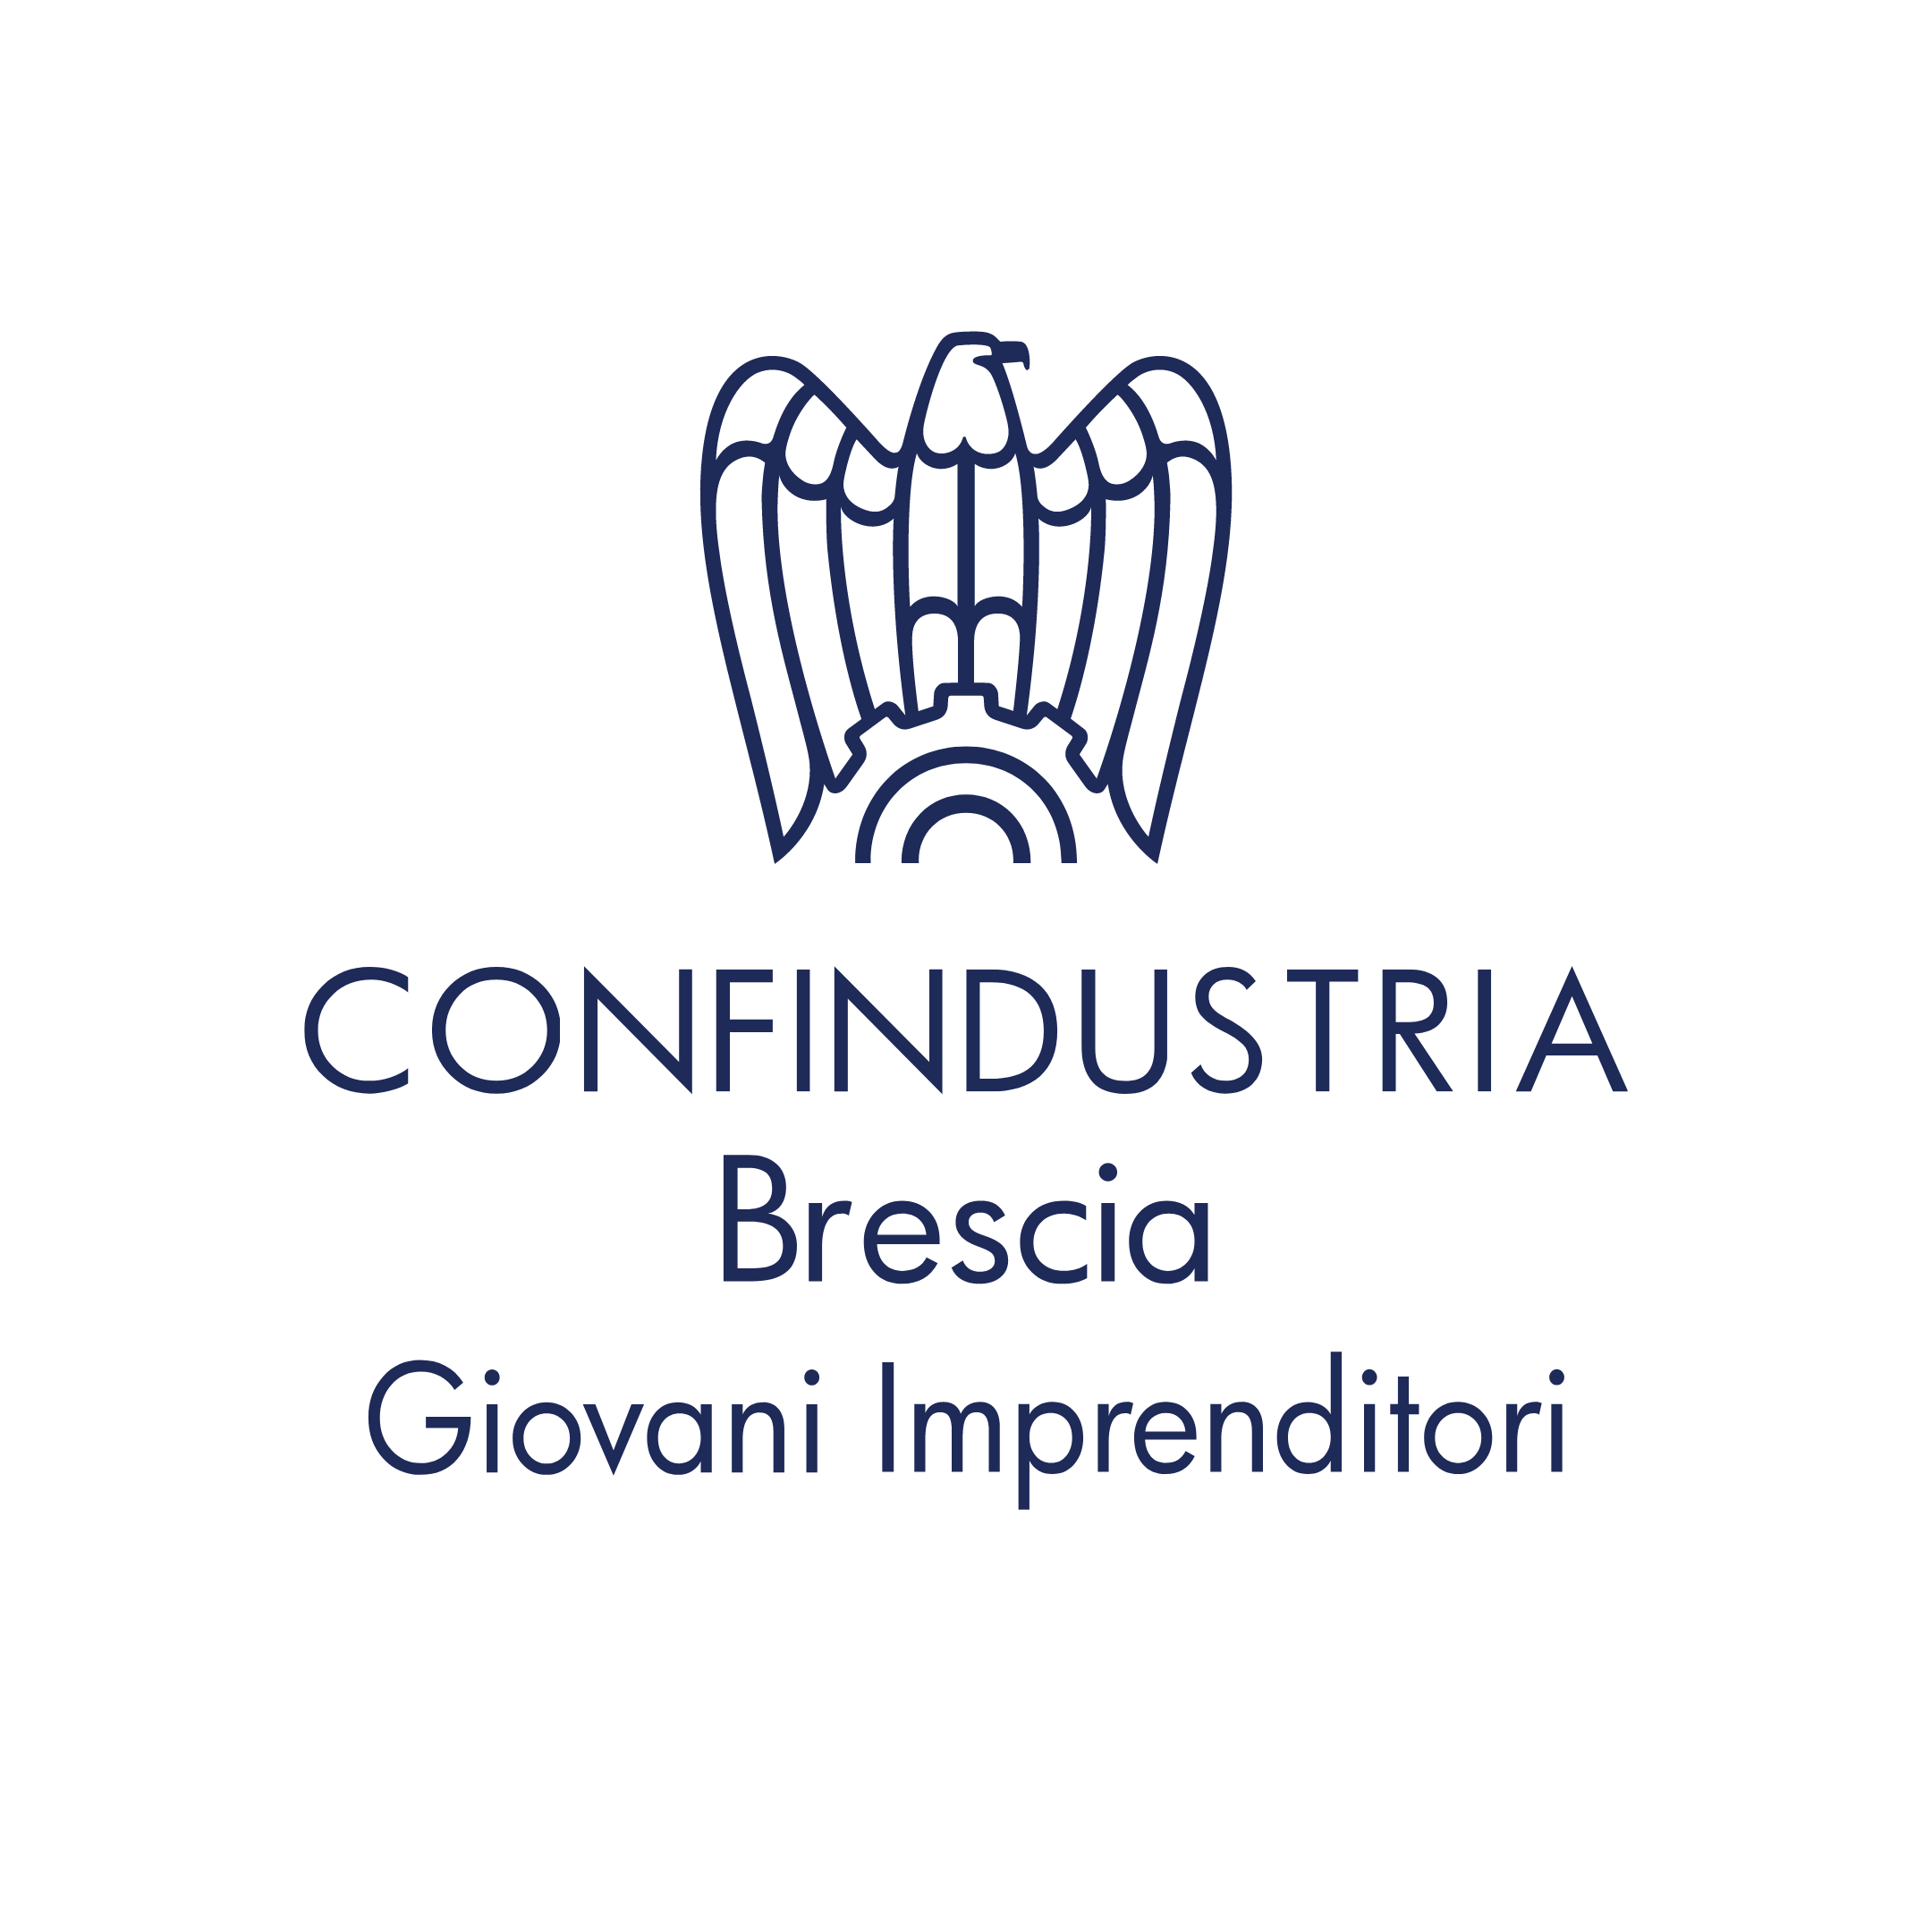 Confi Brescia Giovani Imprenditori